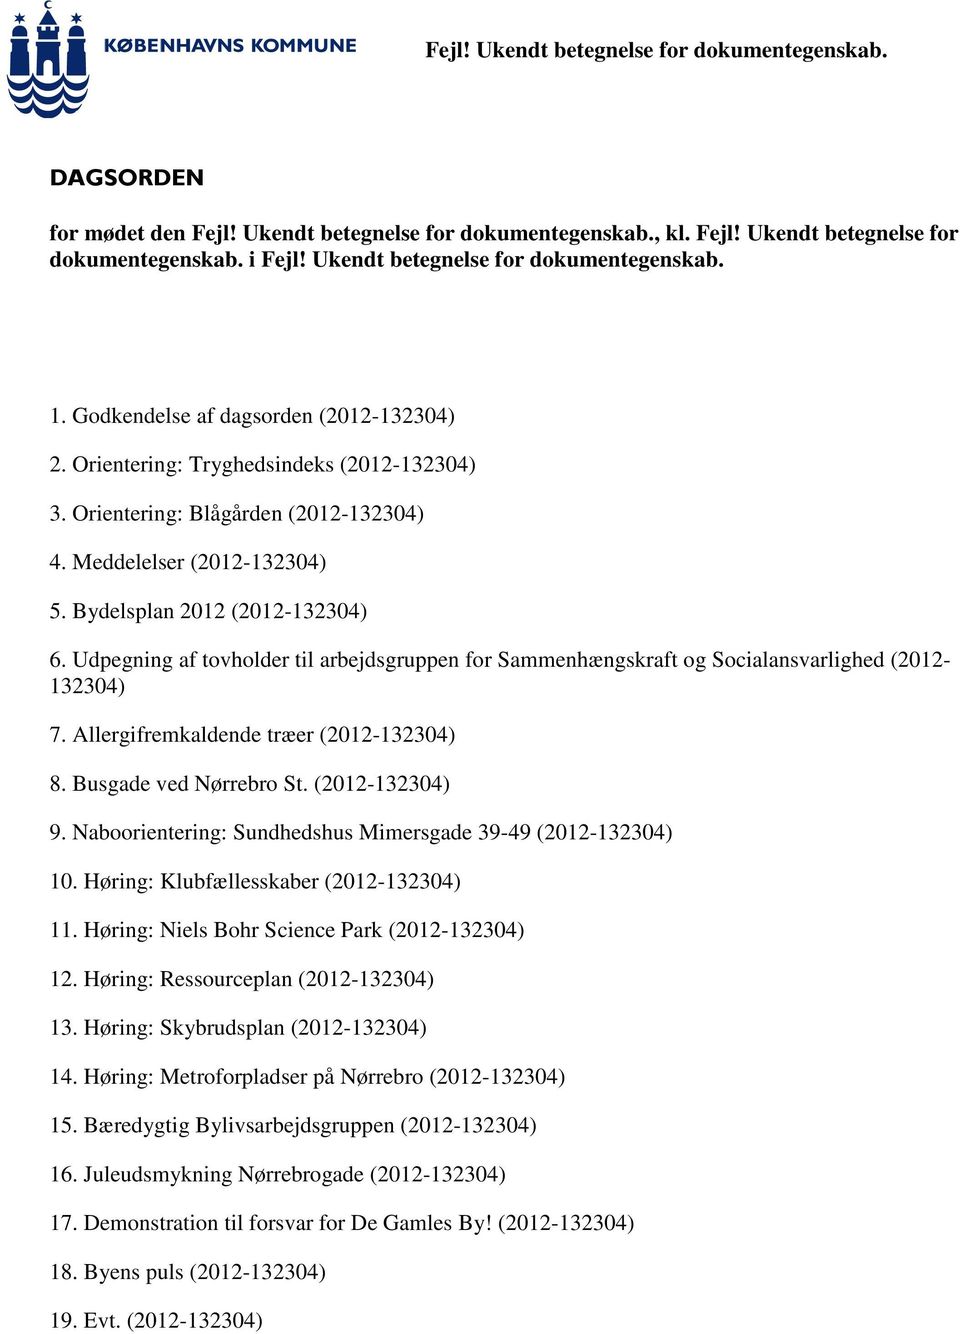 Udpegning af tovholder til arbejdsgruppen for Sammenhængskraft og Socialansvarlighed (2012-132304) 7. Allergifremkaldende træer (2012-132304) 8. Busgade ved Nørrebro St. (2012-132304) 9.